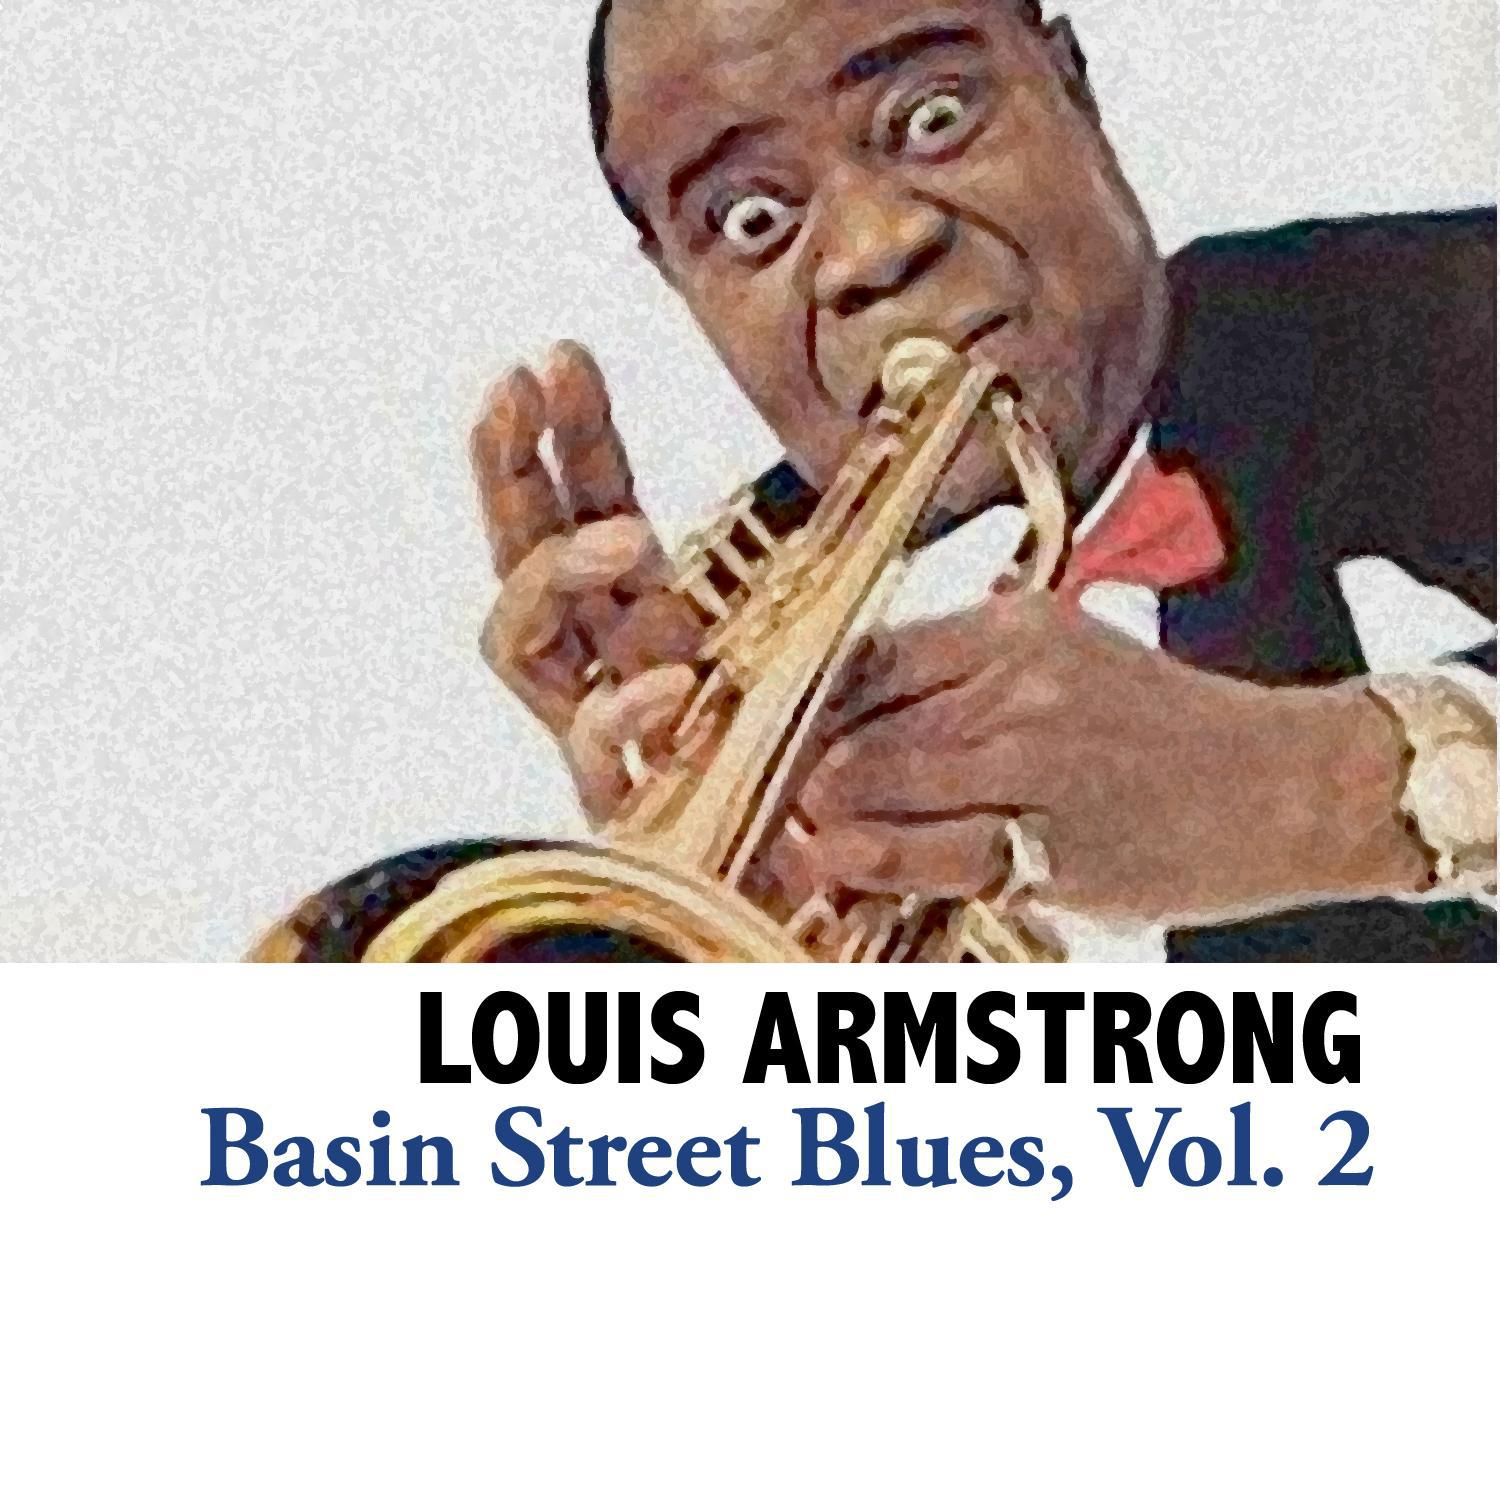 Basin Street Blues, Vol. 2